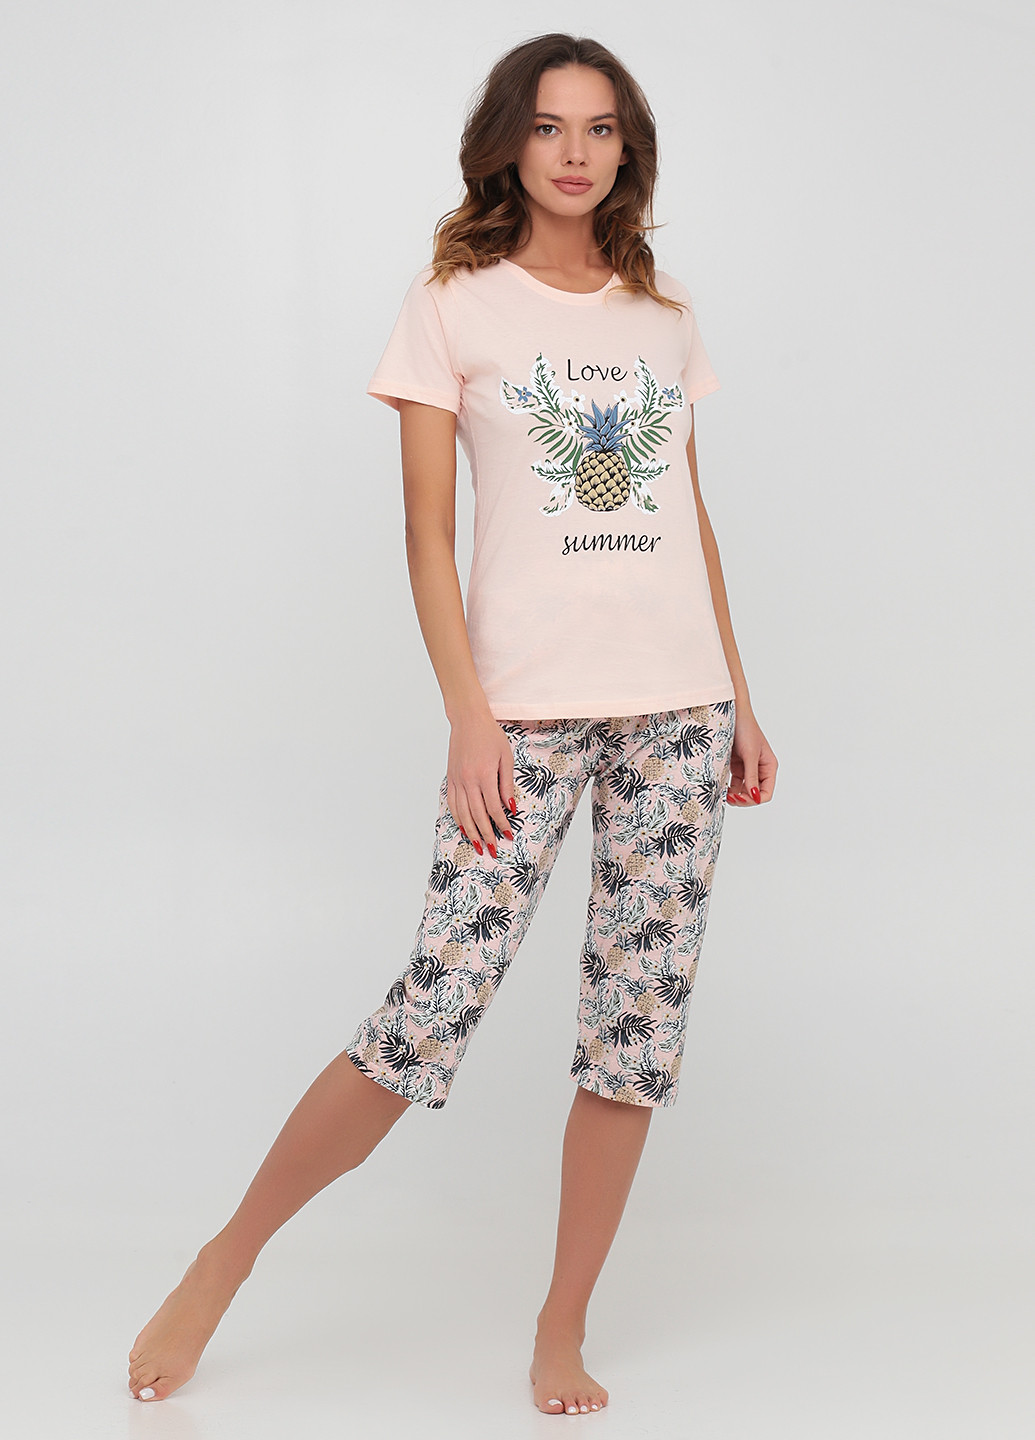 Персикова всесезон піжама (футболка, бриджі) футболка+ бриджі Boyraz